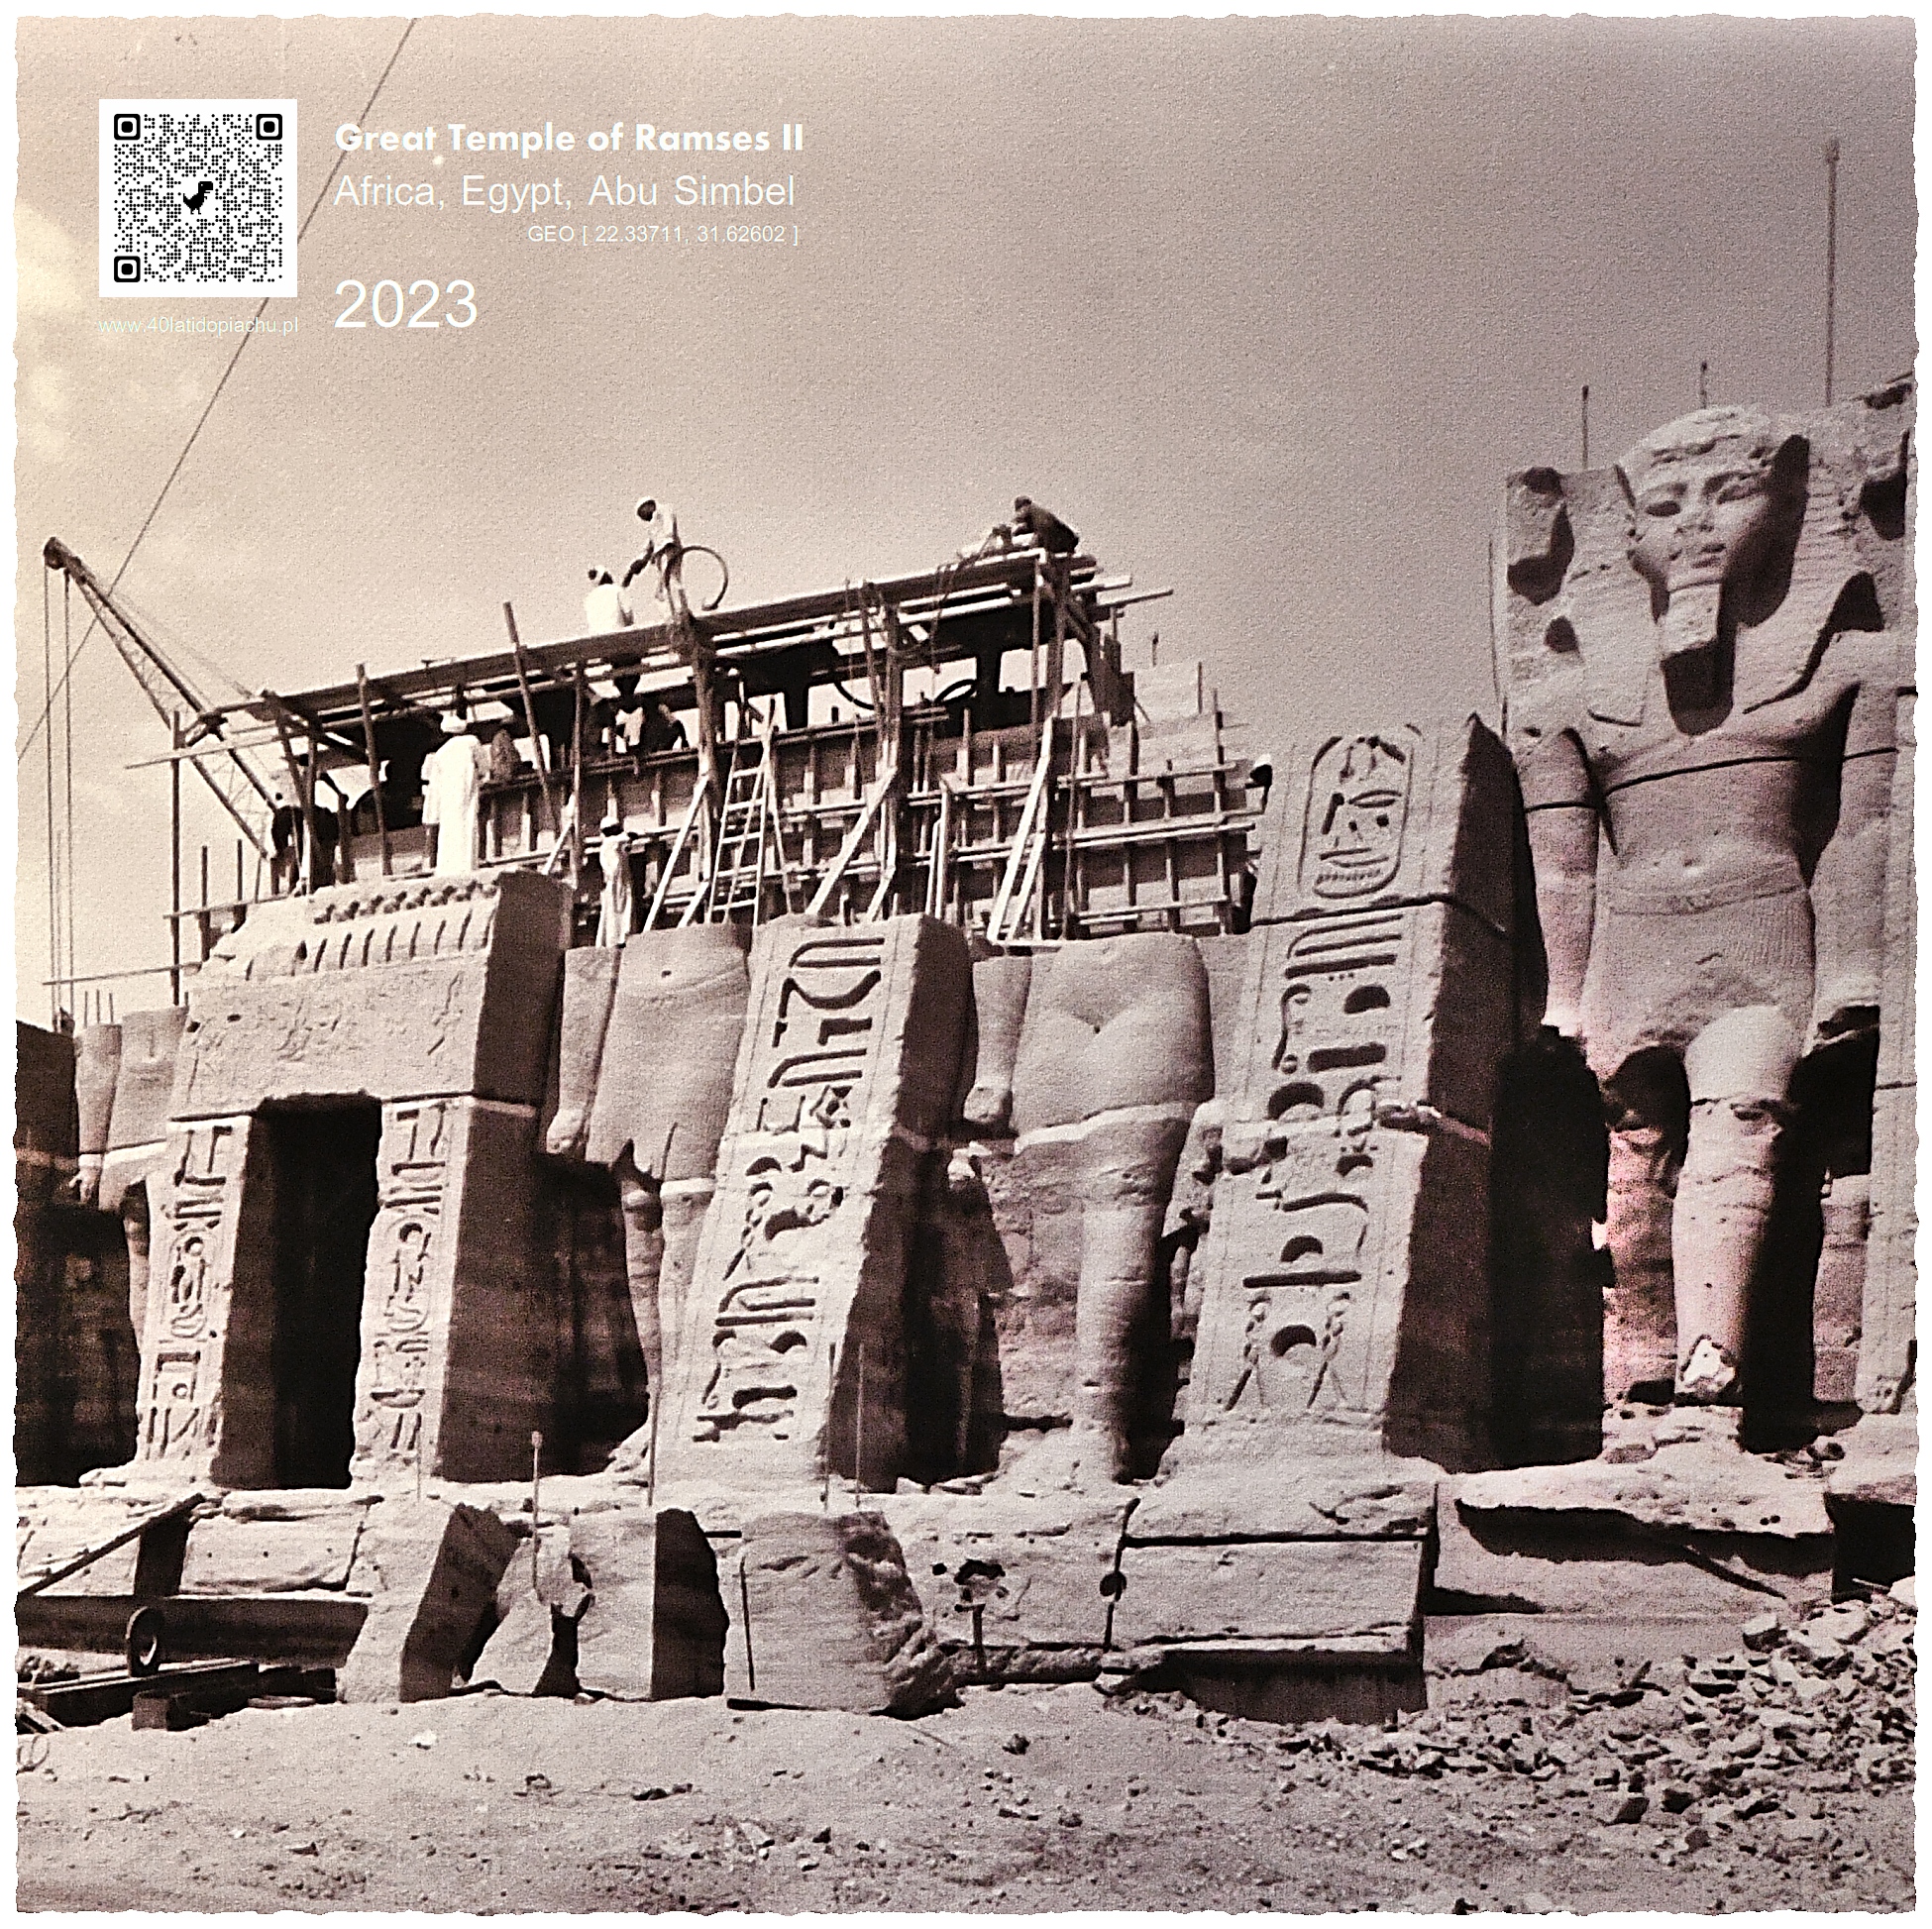 Egipt świątynia w Abu Simbel w trakcie rekonstrukcji